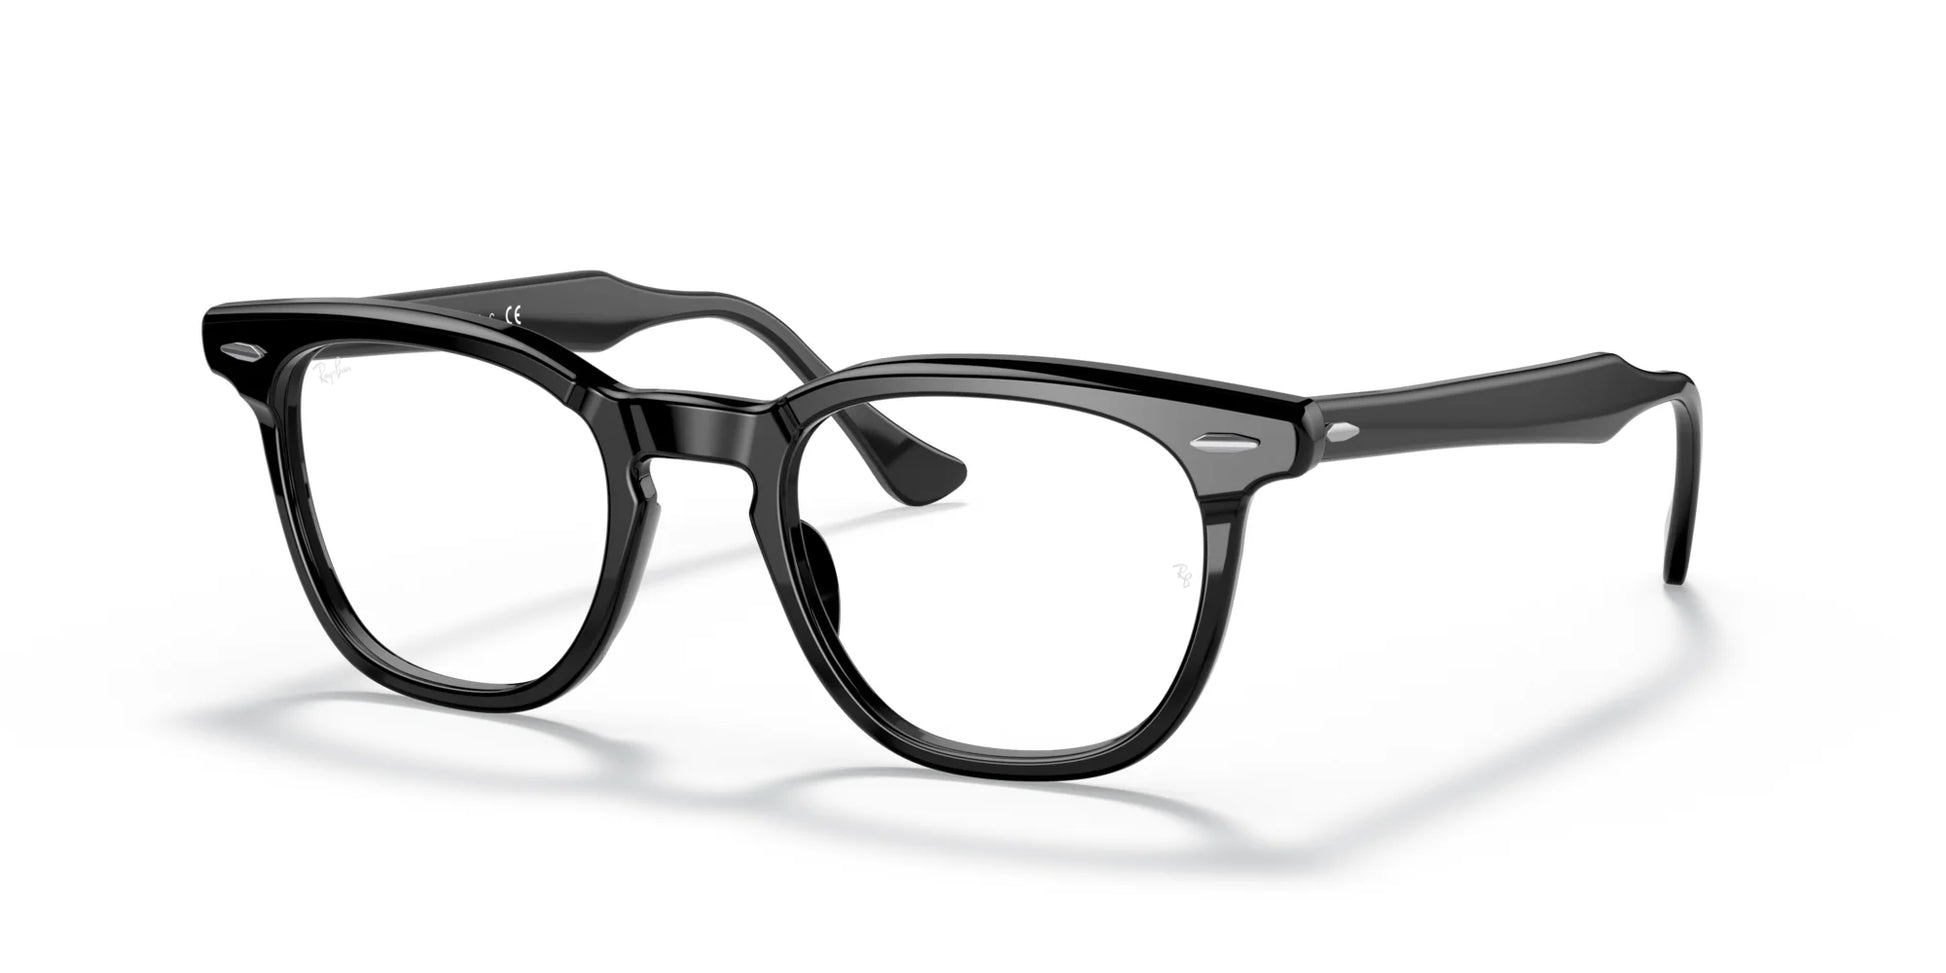 Ray-Ban HAWKEYE RX5398 Eyeglasses Black / Clear